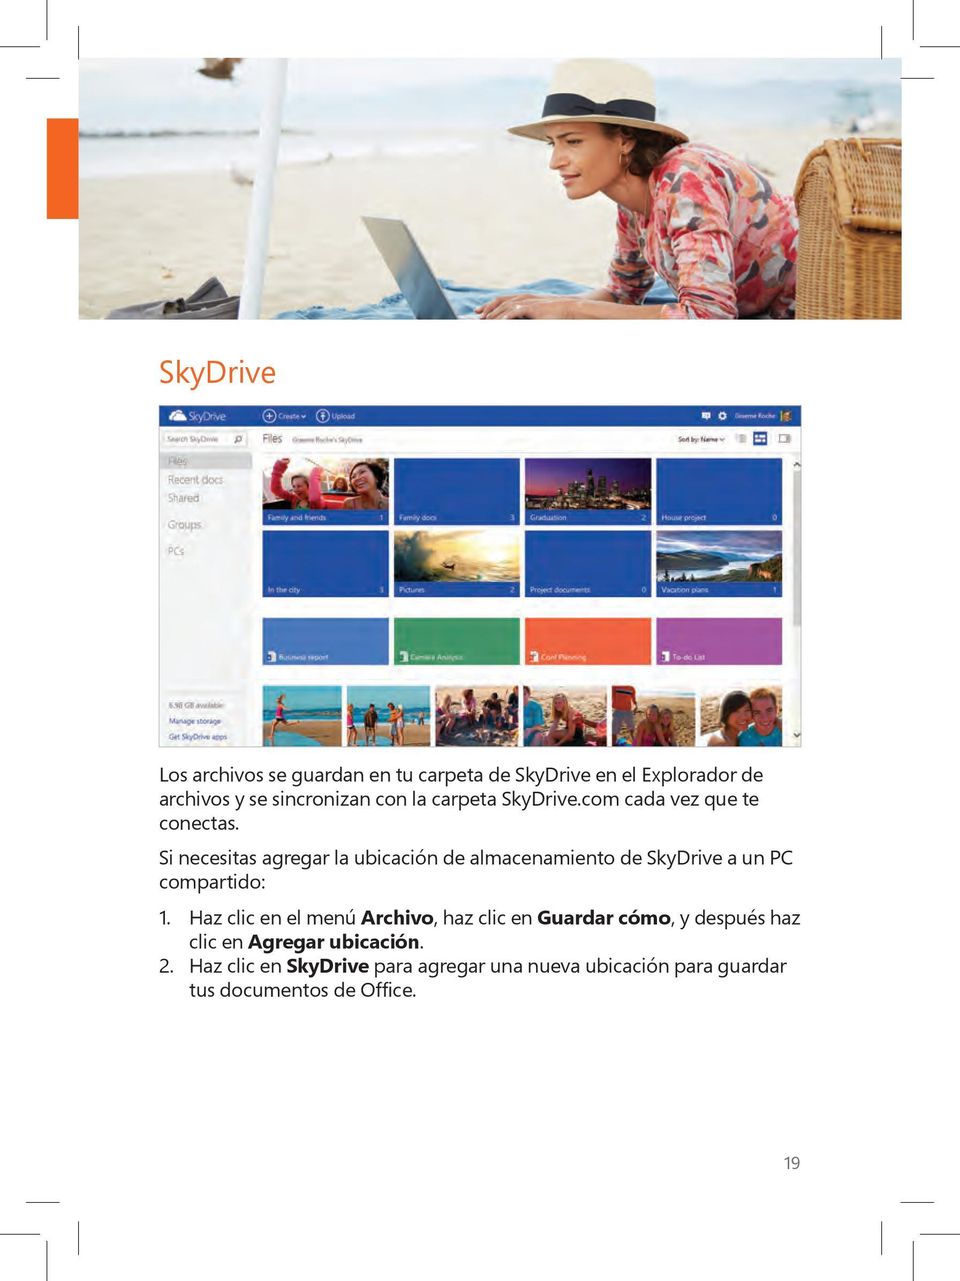 Si necesitas agregar la ubicación de almacenamiento de SkyDrive a un PC compartido: 1.